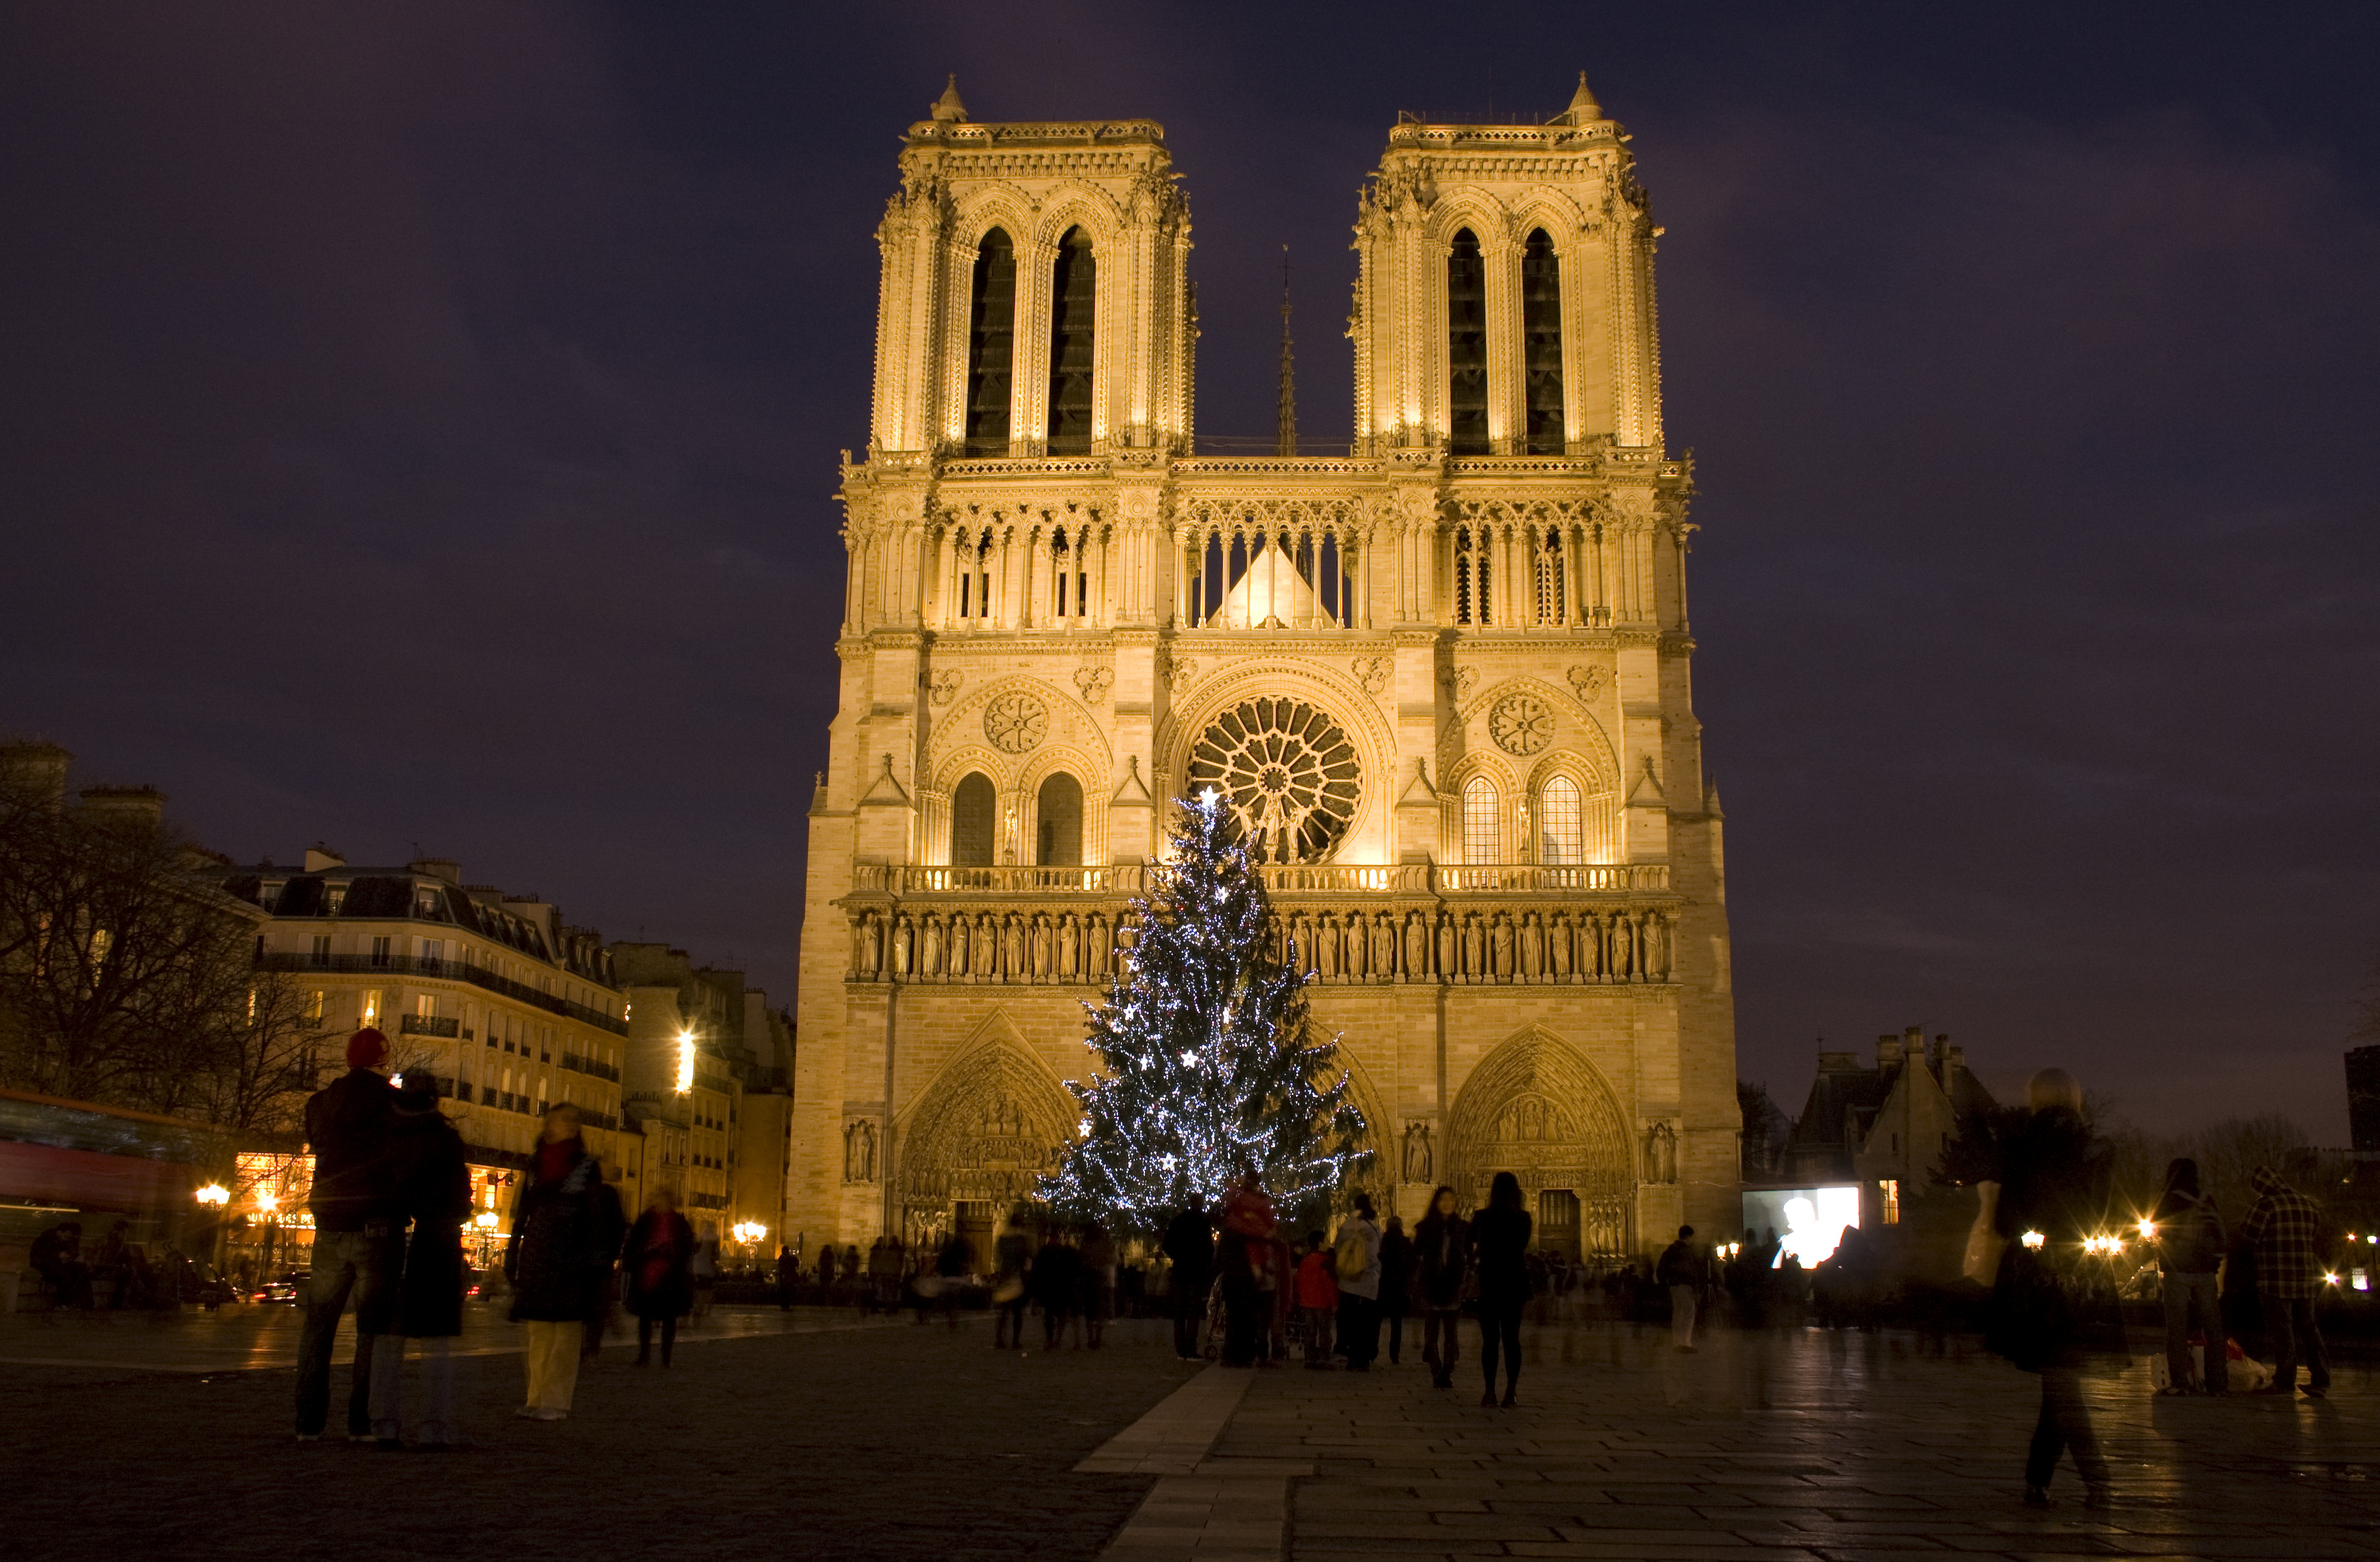 มหาวิหารนอเทรอดาม (Notre Dame Cathedral หรือ Notre Dame de Paris) กรุงปารีส ประเทศฝรั่งเศส